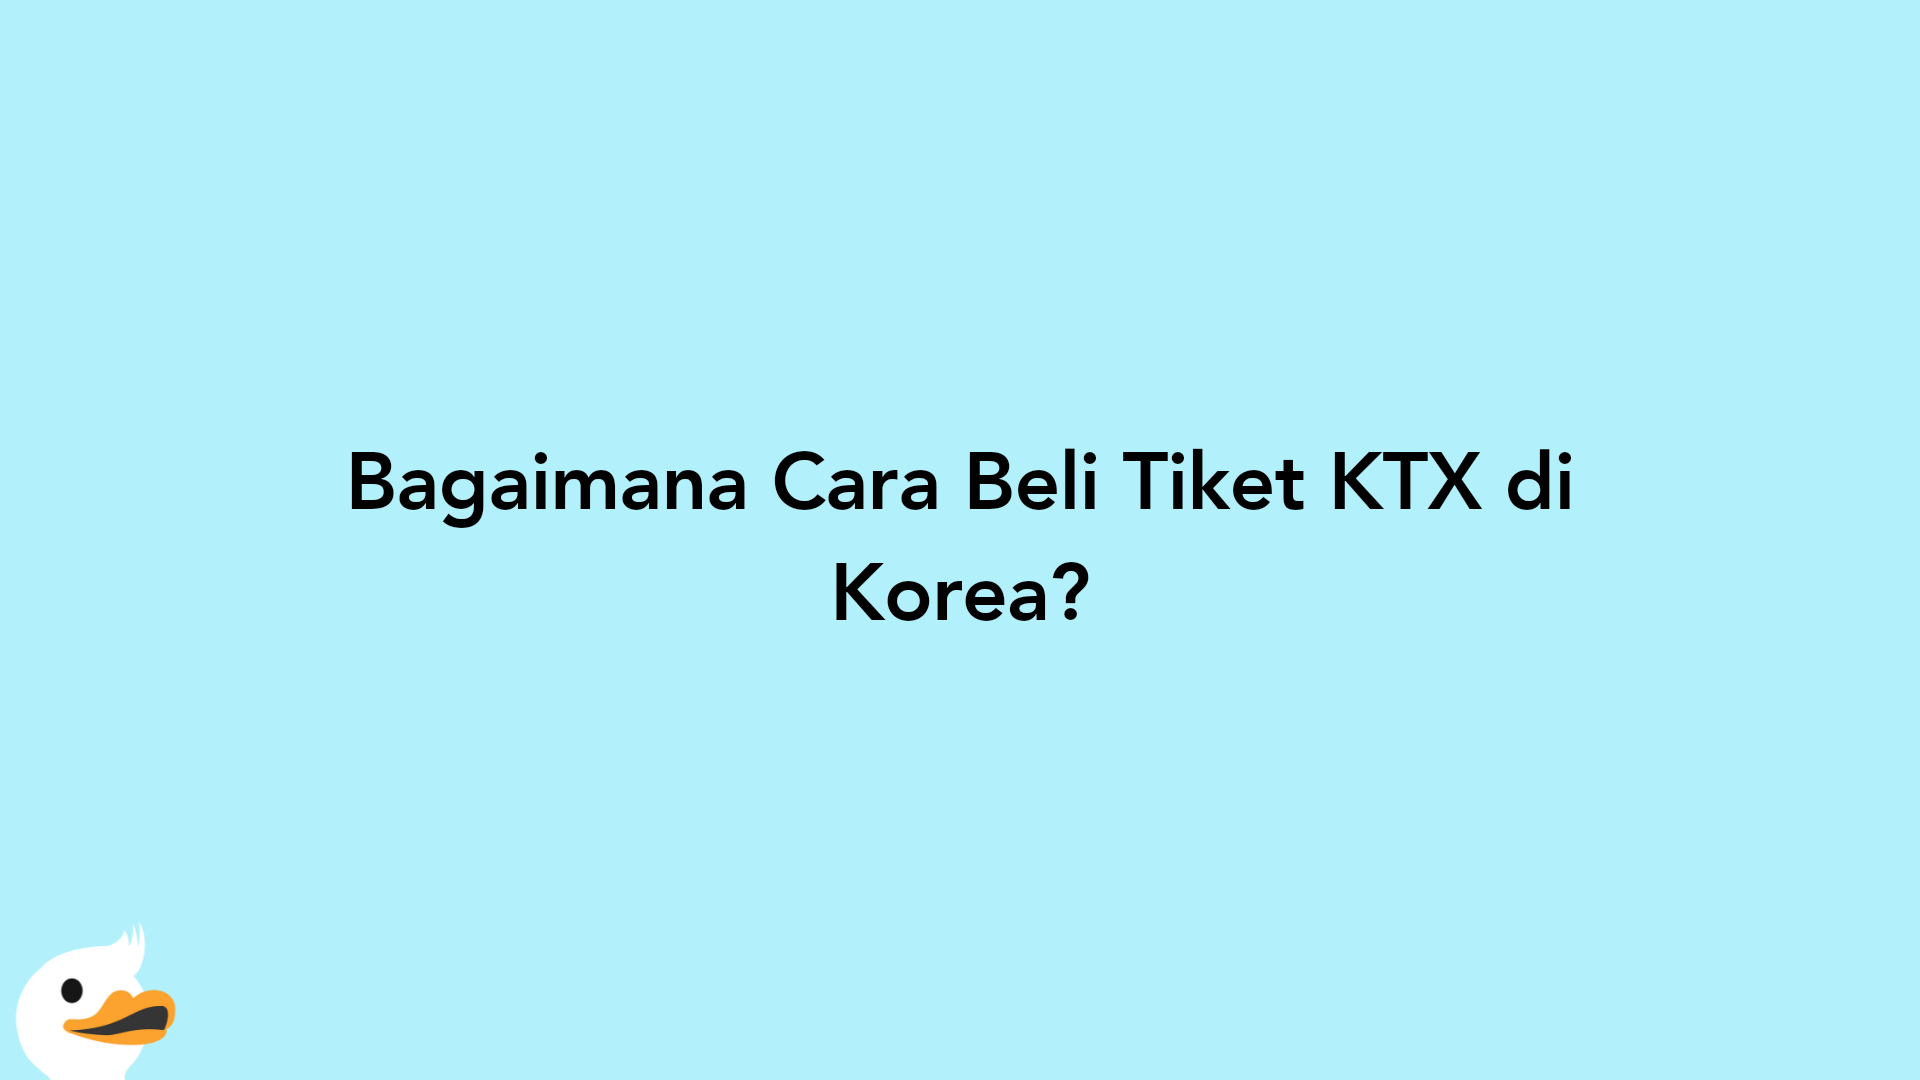 Bagaimana Cara Beli Tiket KTX di Korea?